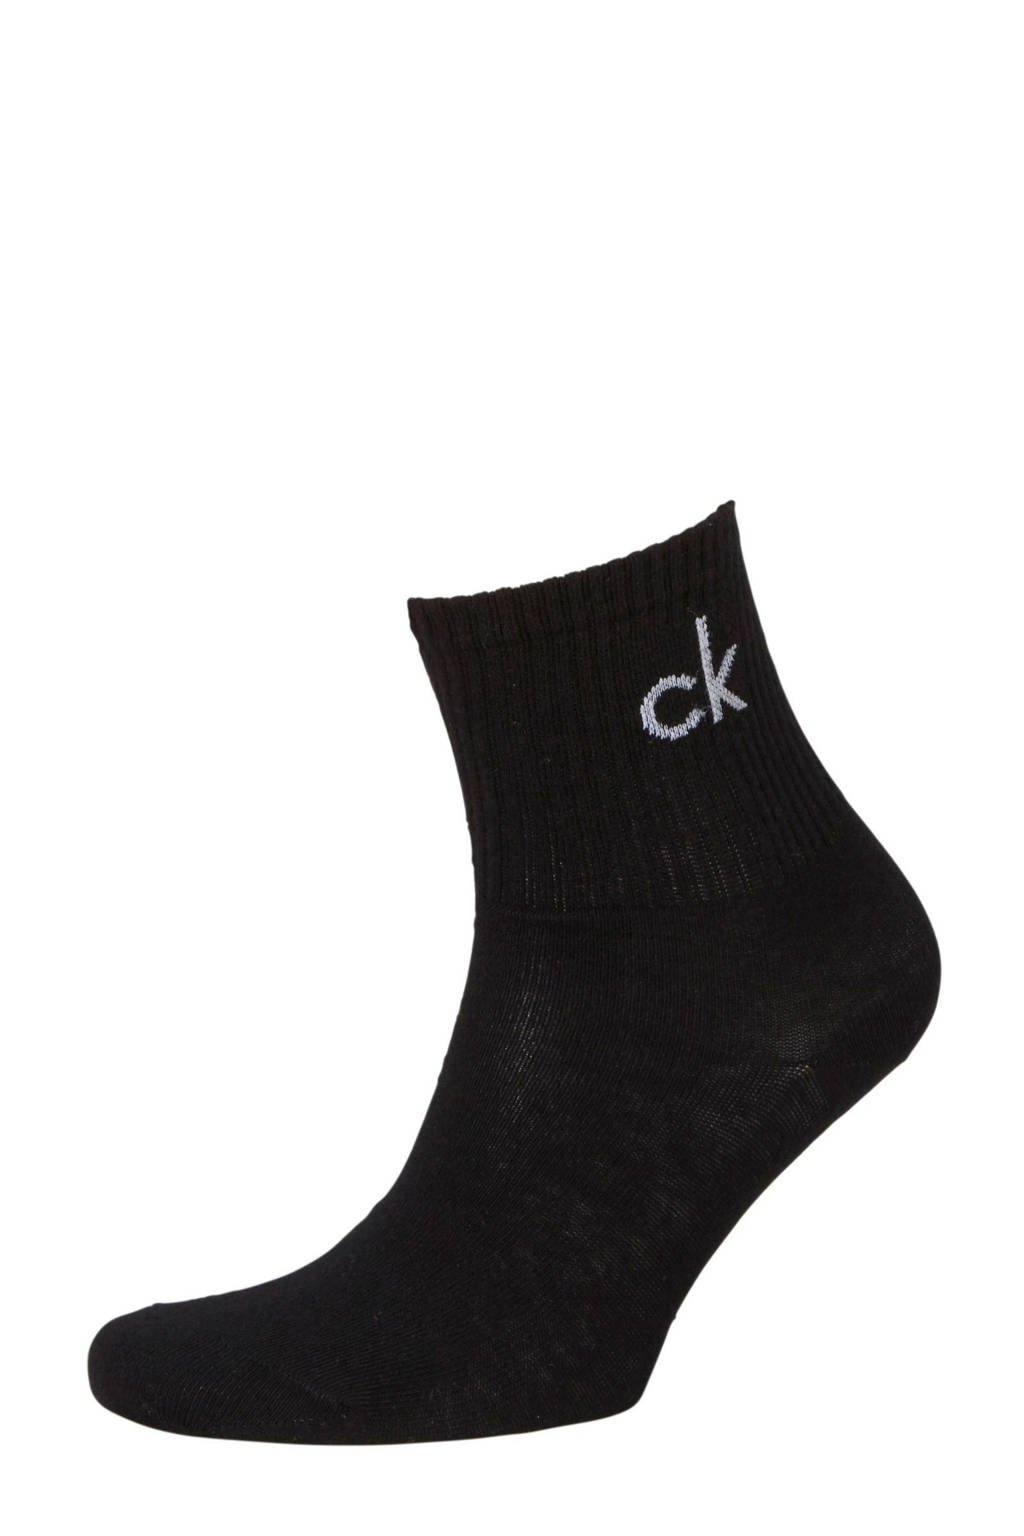 offset meer en meer Museum Calvin Klein sokken zwart kopen? | Morgen in huis | wehkamp